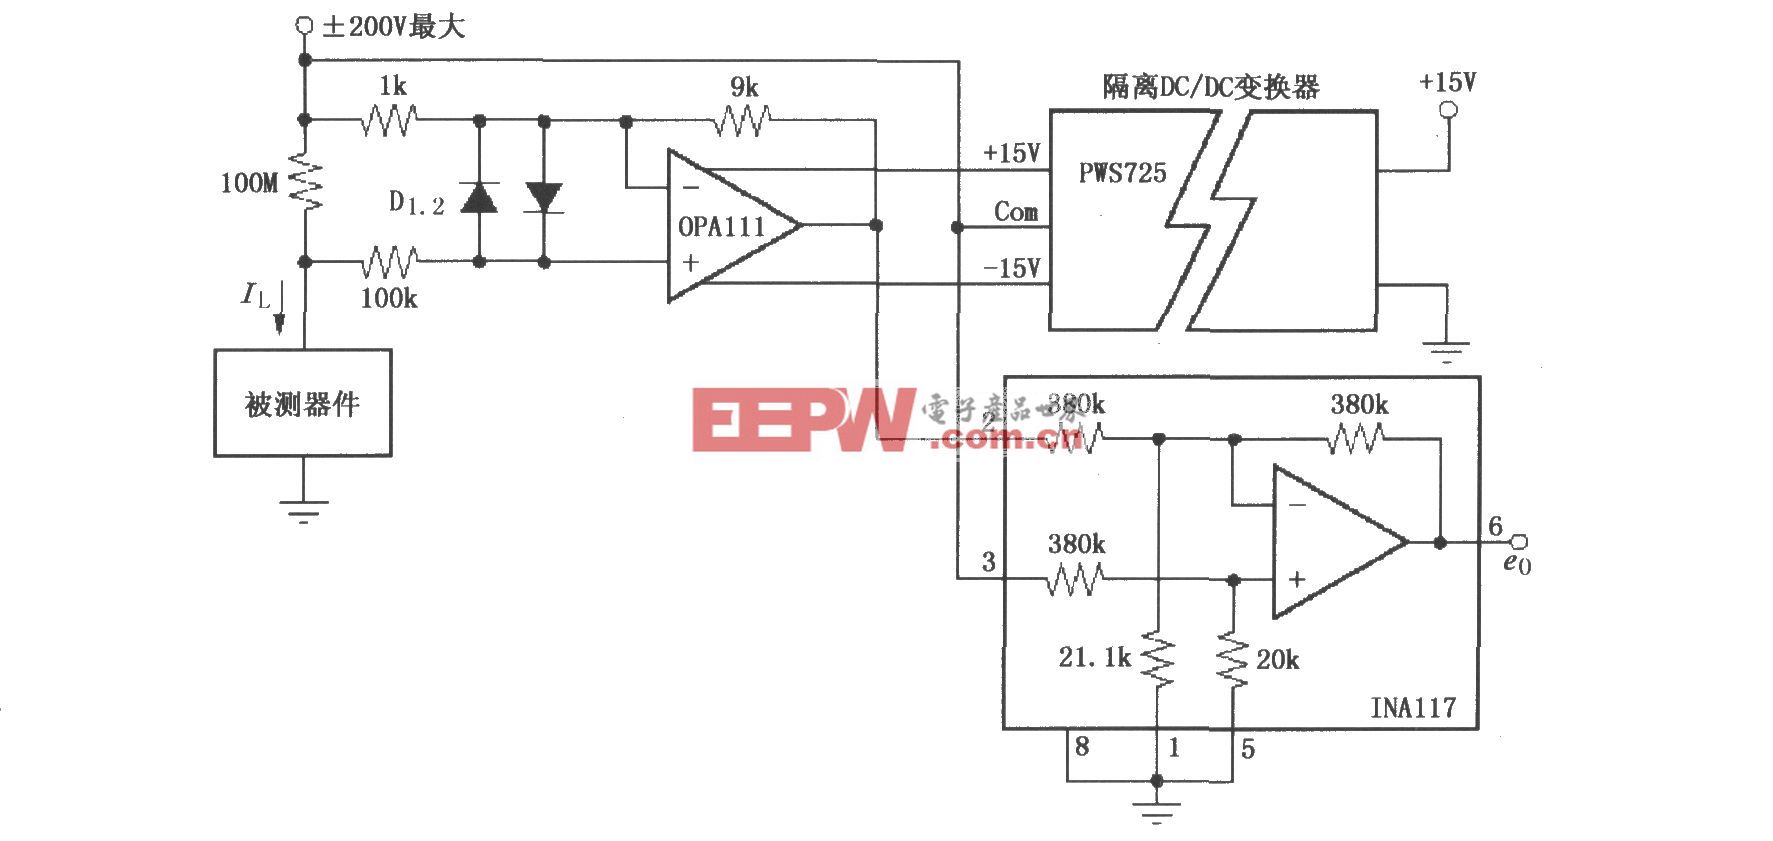 缓冲器的漏电电流测量电路(OPA111、INA117)